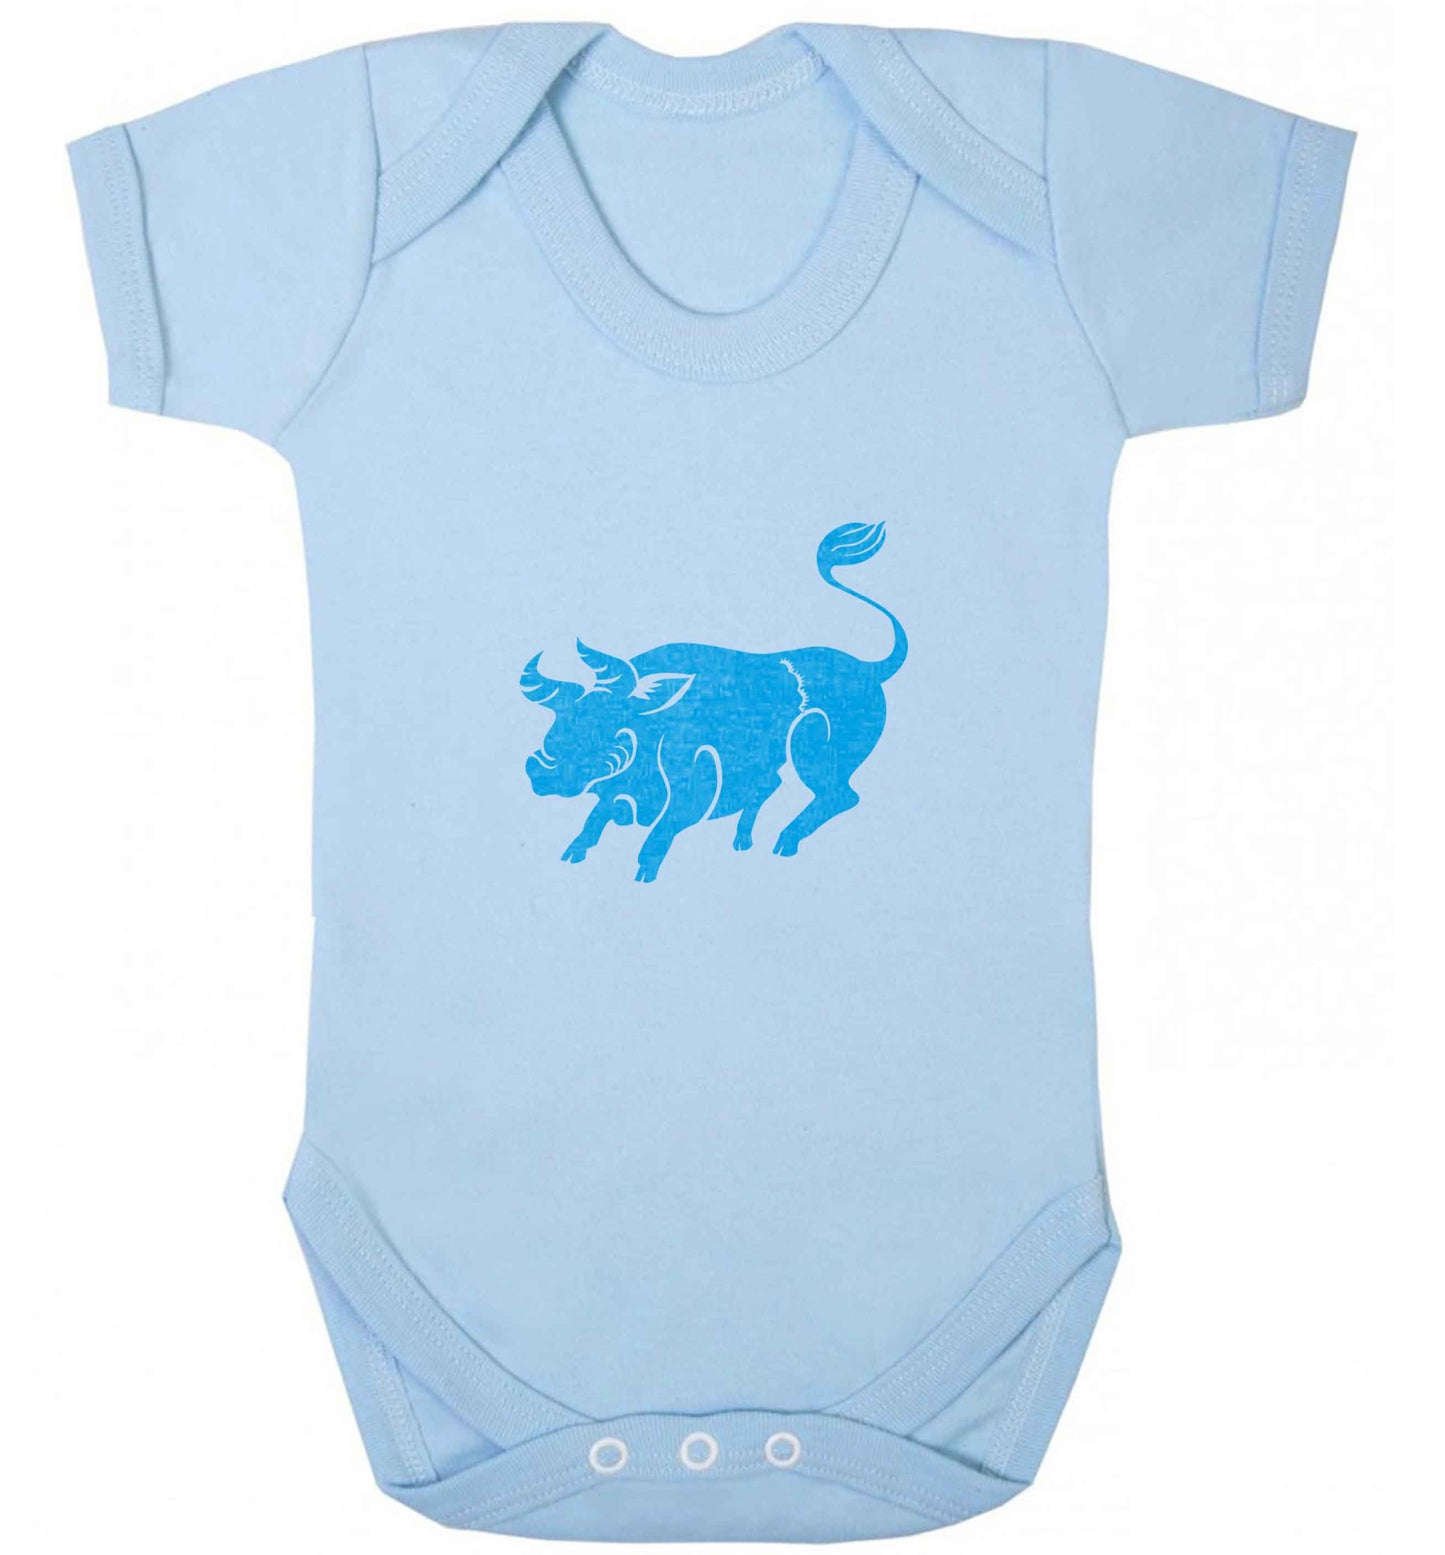 Blue ox baby vest pale blue 18-24 months